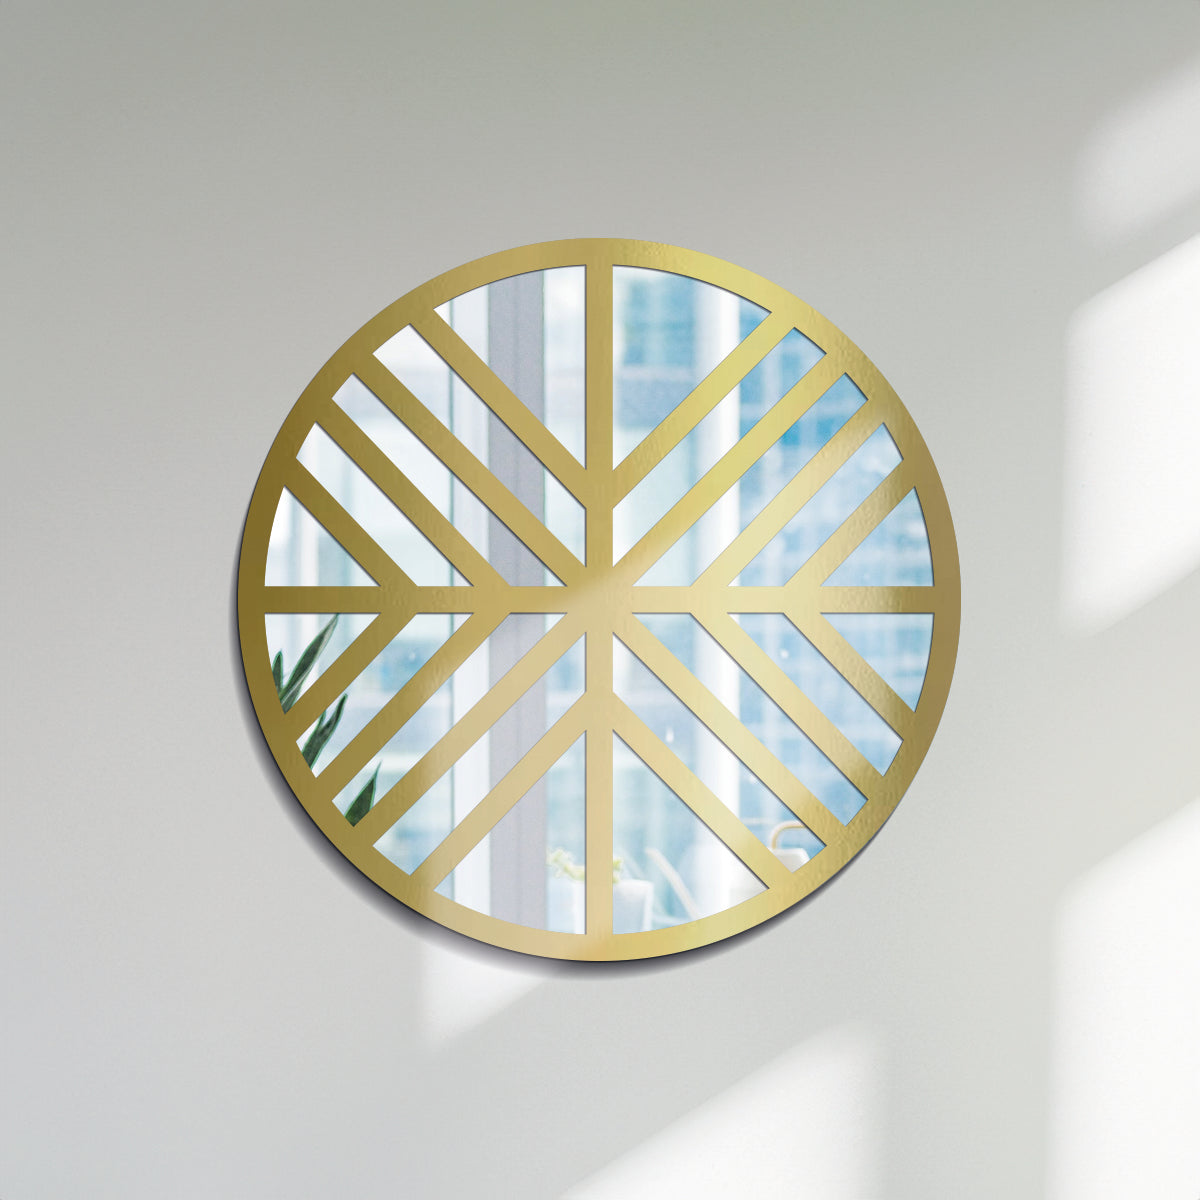 Energía - Espejo decorativo 30 cm en madera